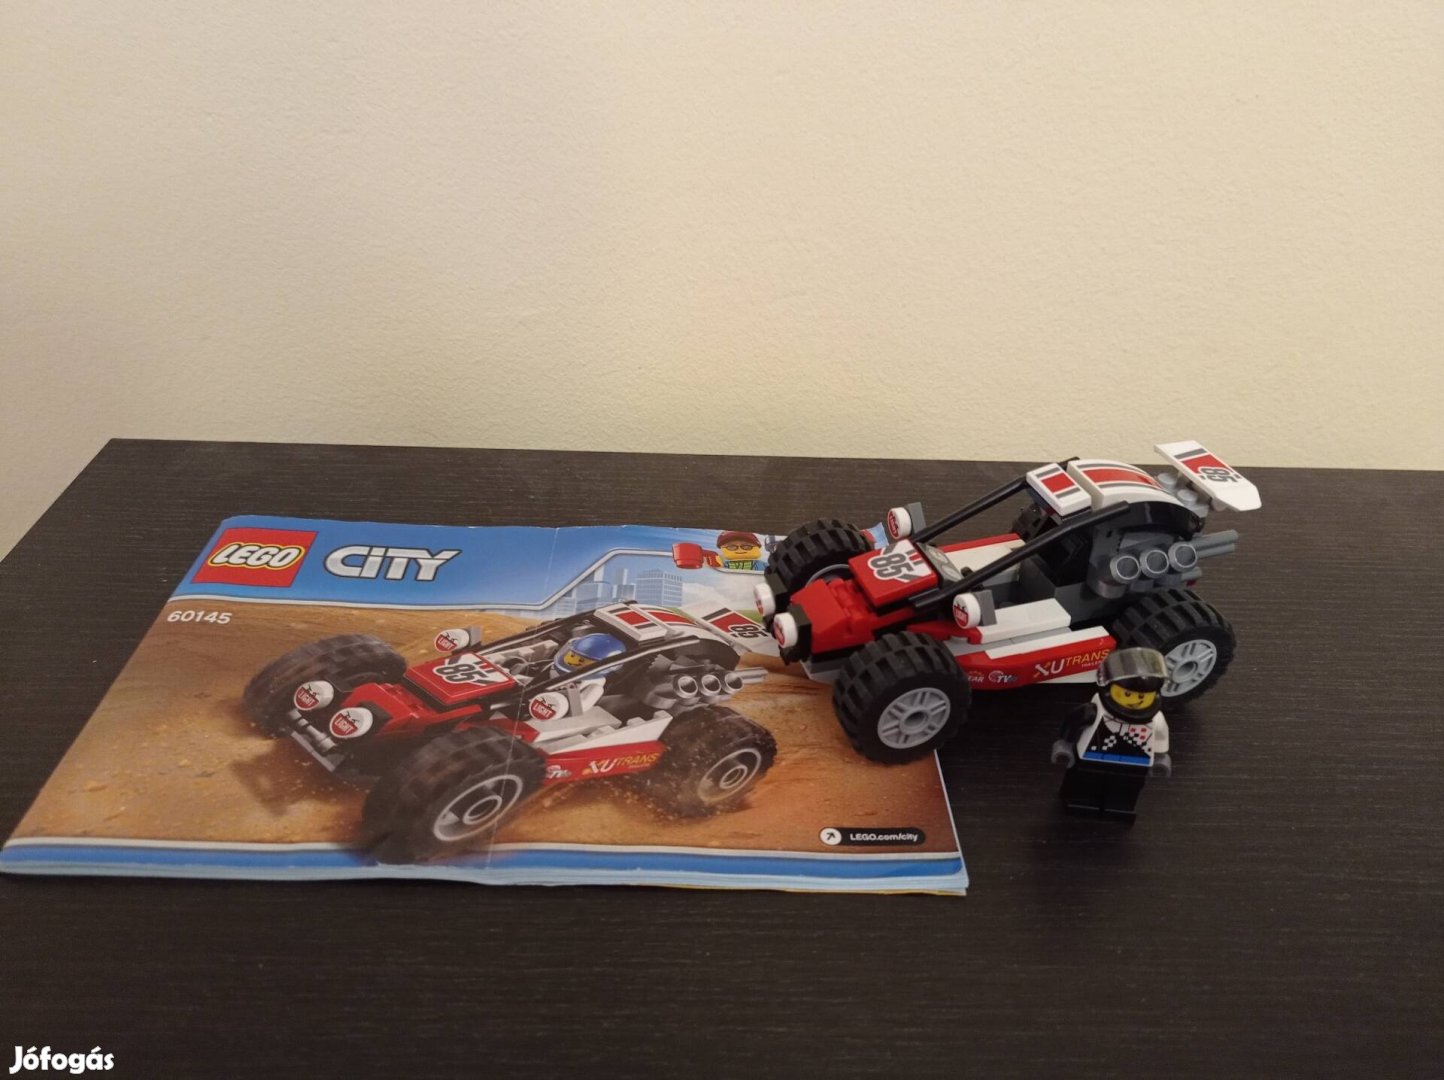 Lego 60145 City